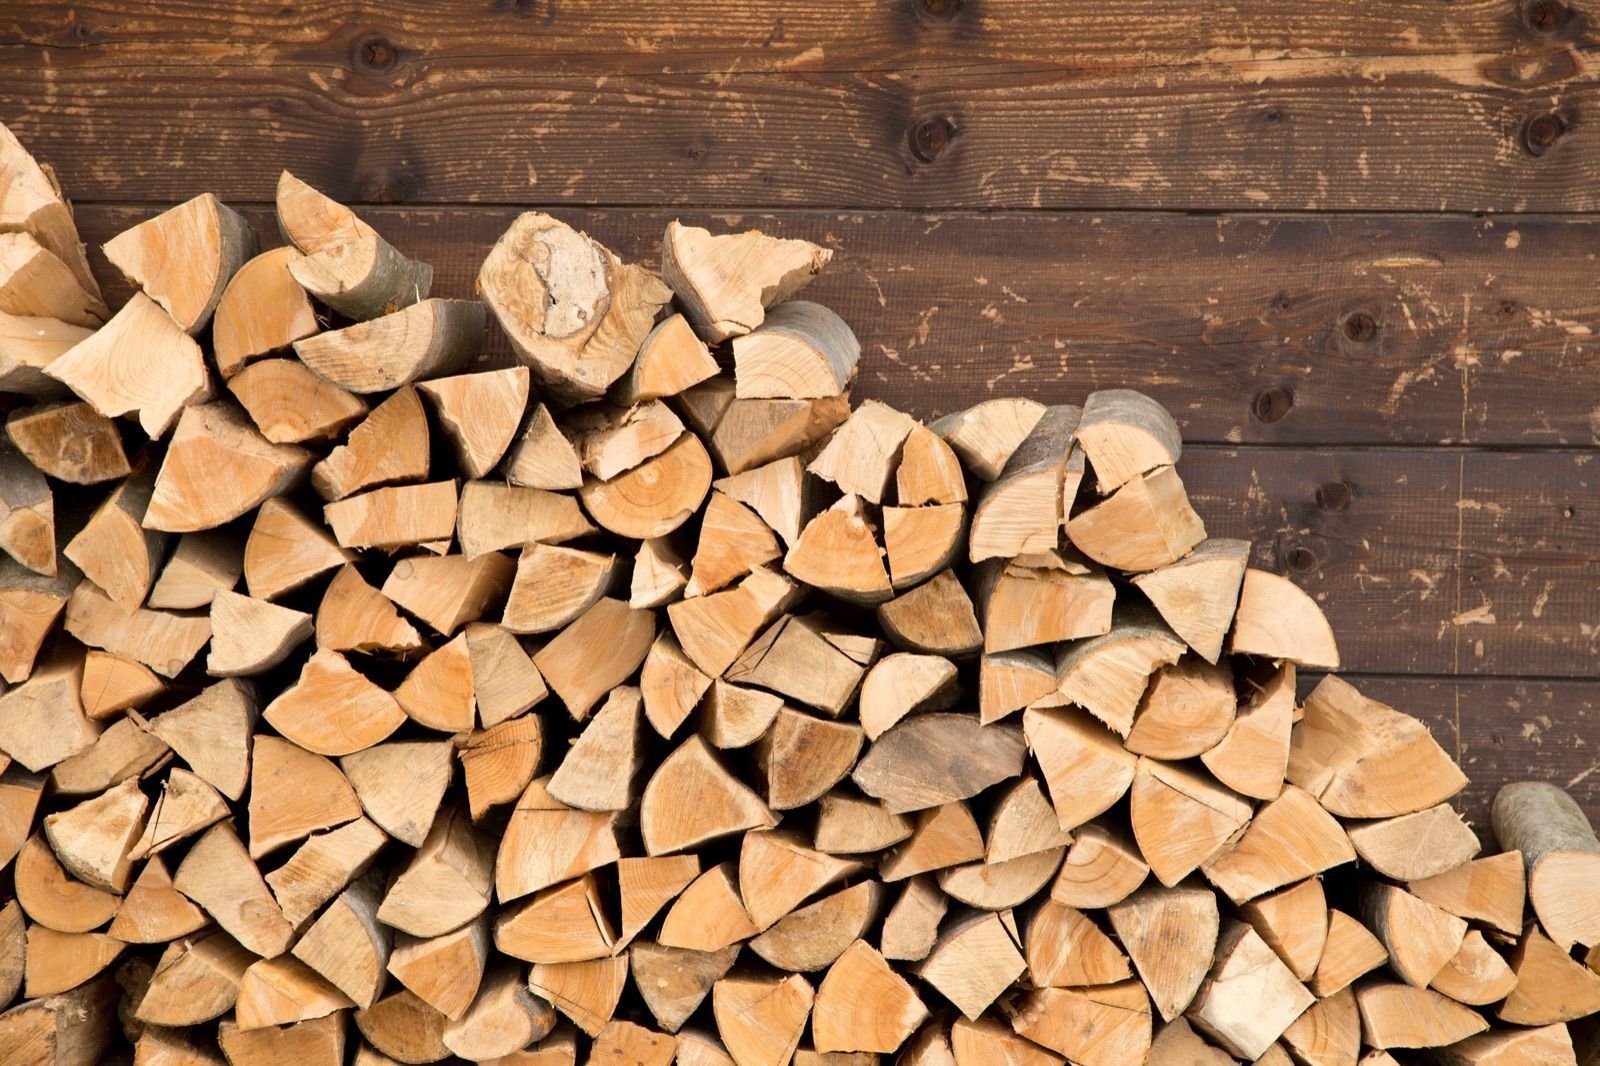  Angajaţii din domeniul silvic se judecă pentru a primi şase metri cubi de lemn de foc în fiecare an